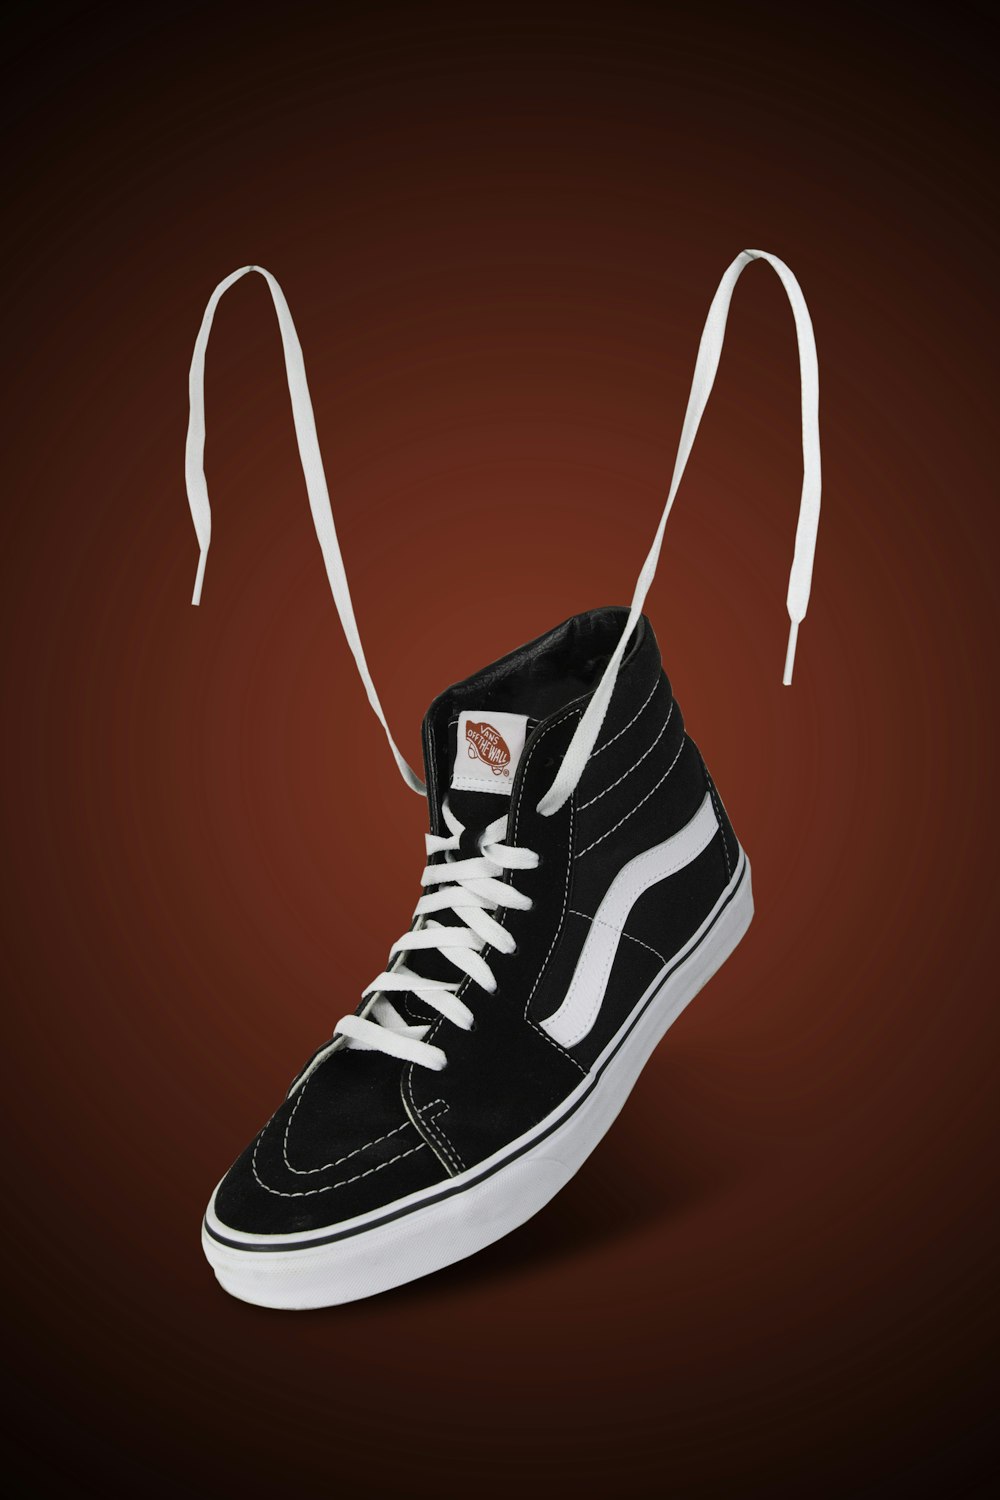 Schwarz-weiße Nike High Top Sneakers